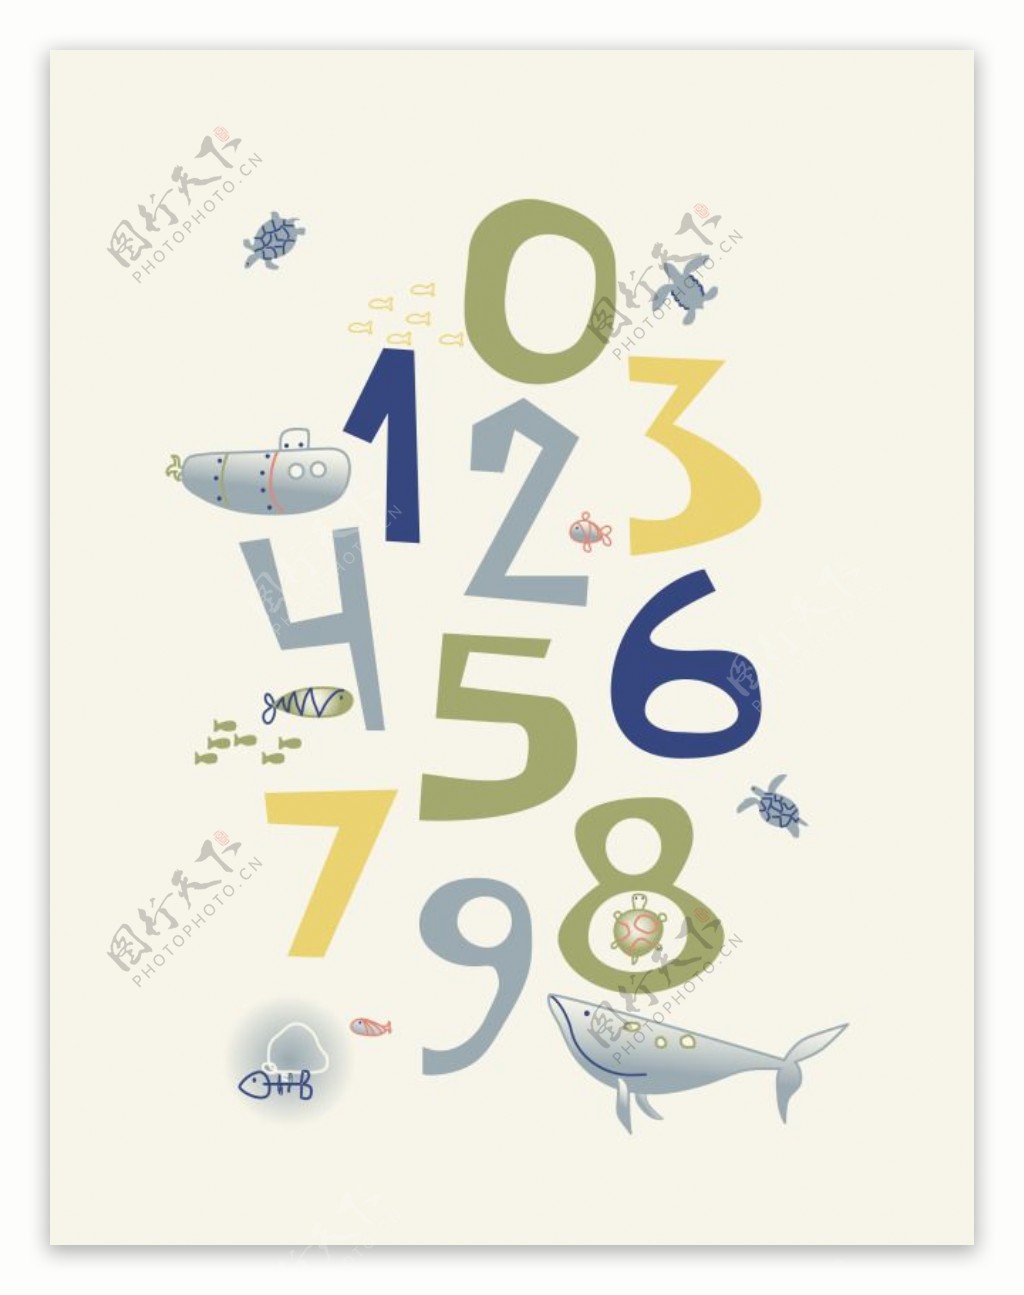 数字鱼类图案装饰